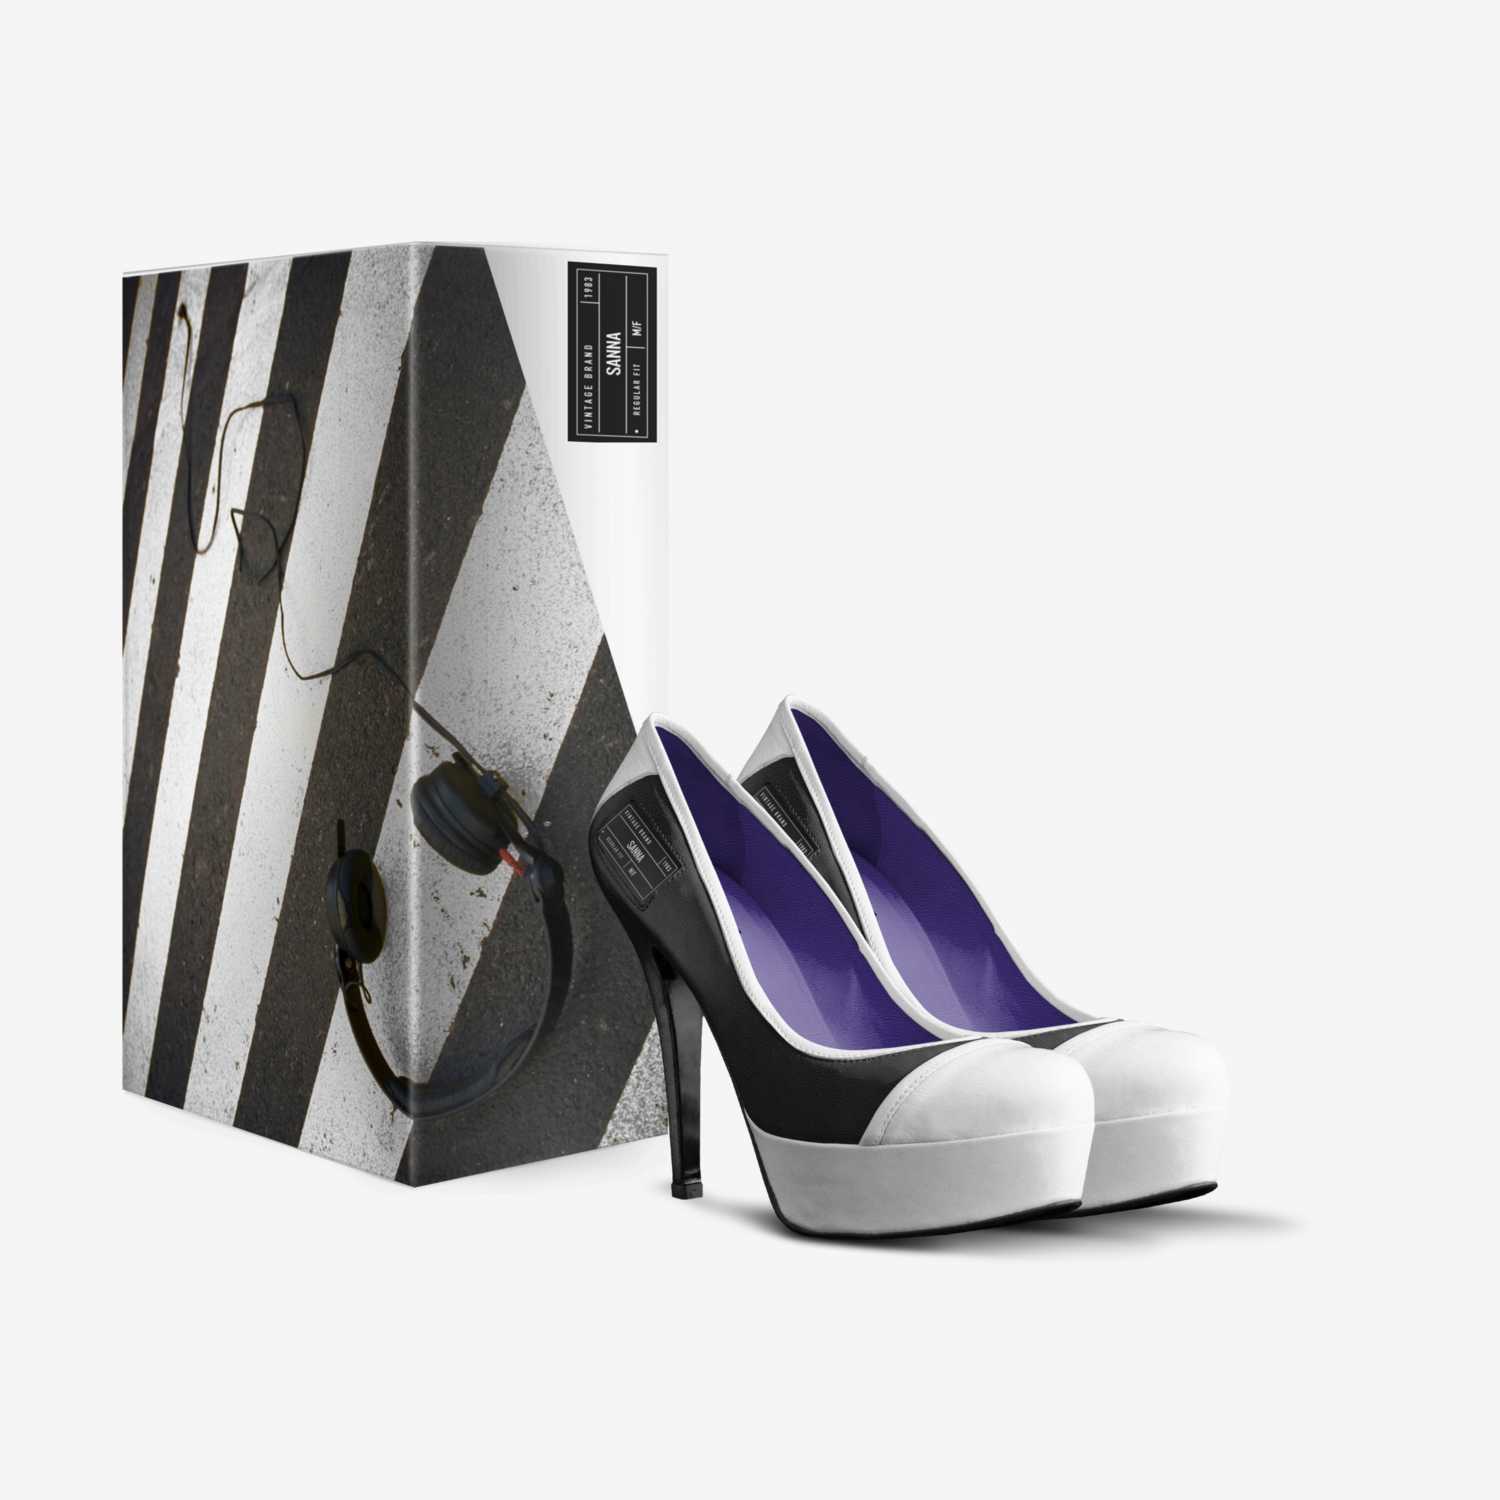 SANNA custom made in Italy shoes by Sanna Vuorela | Box view